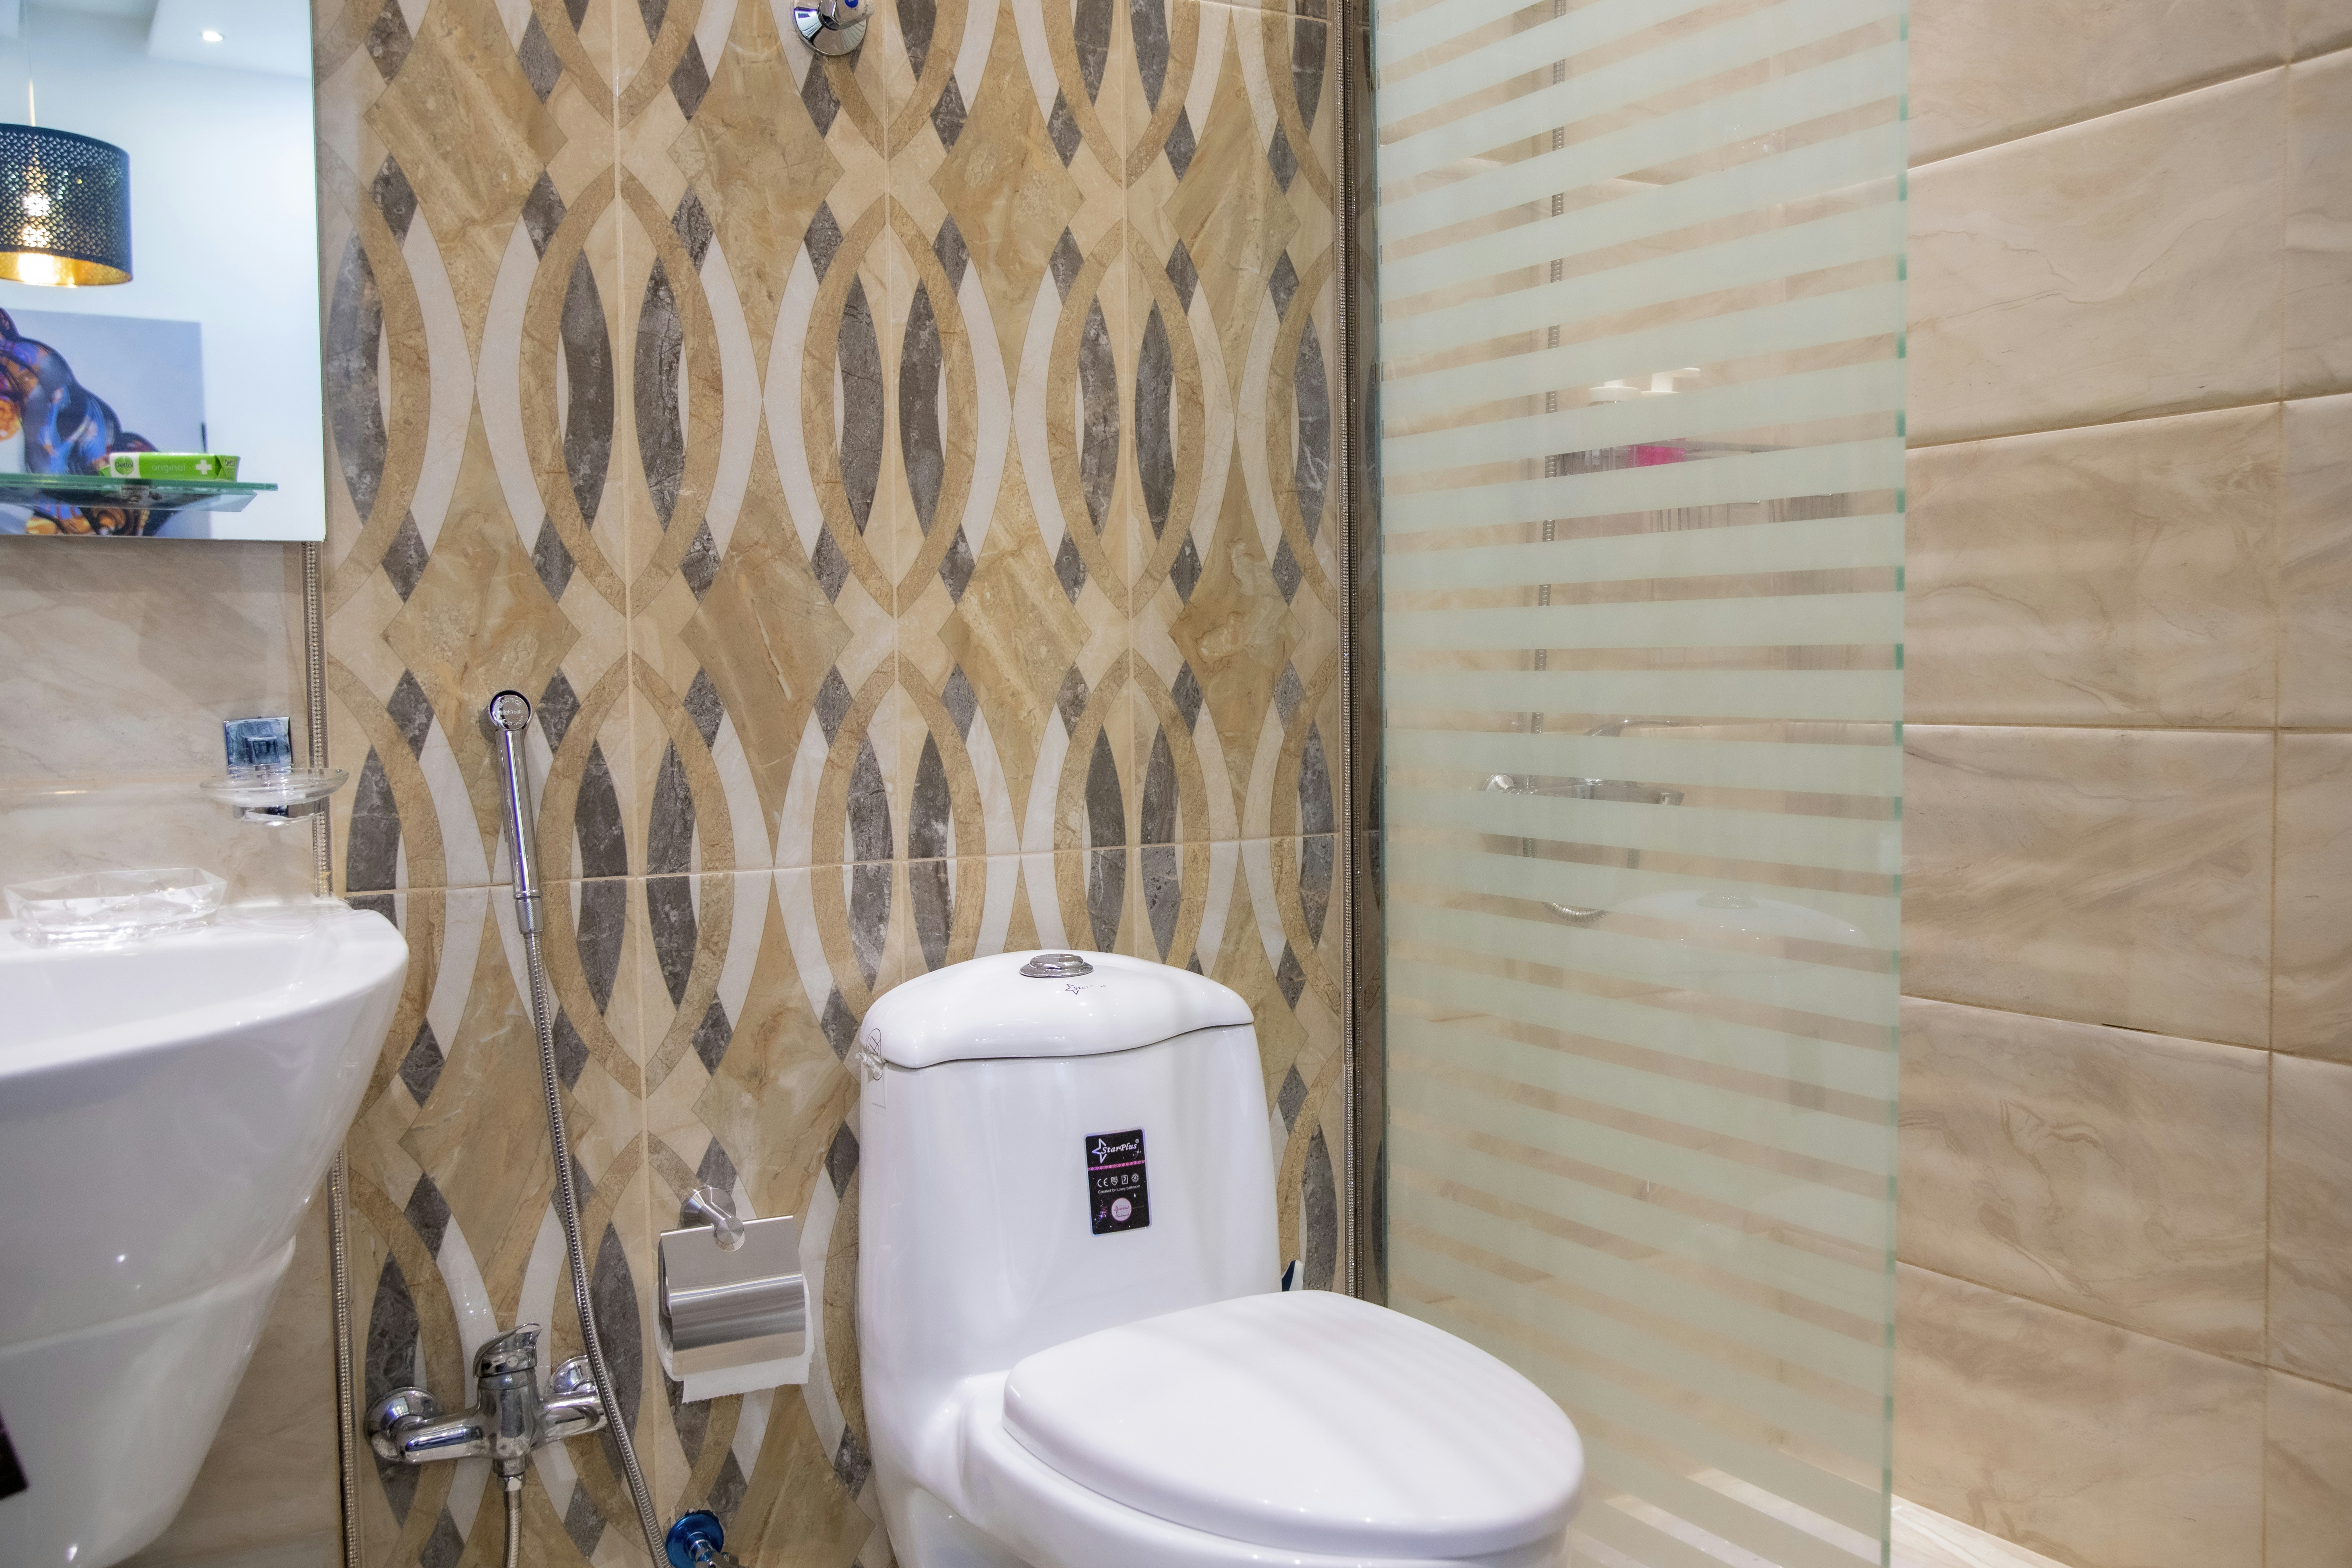 washlet vs bidet in a modern bathroom